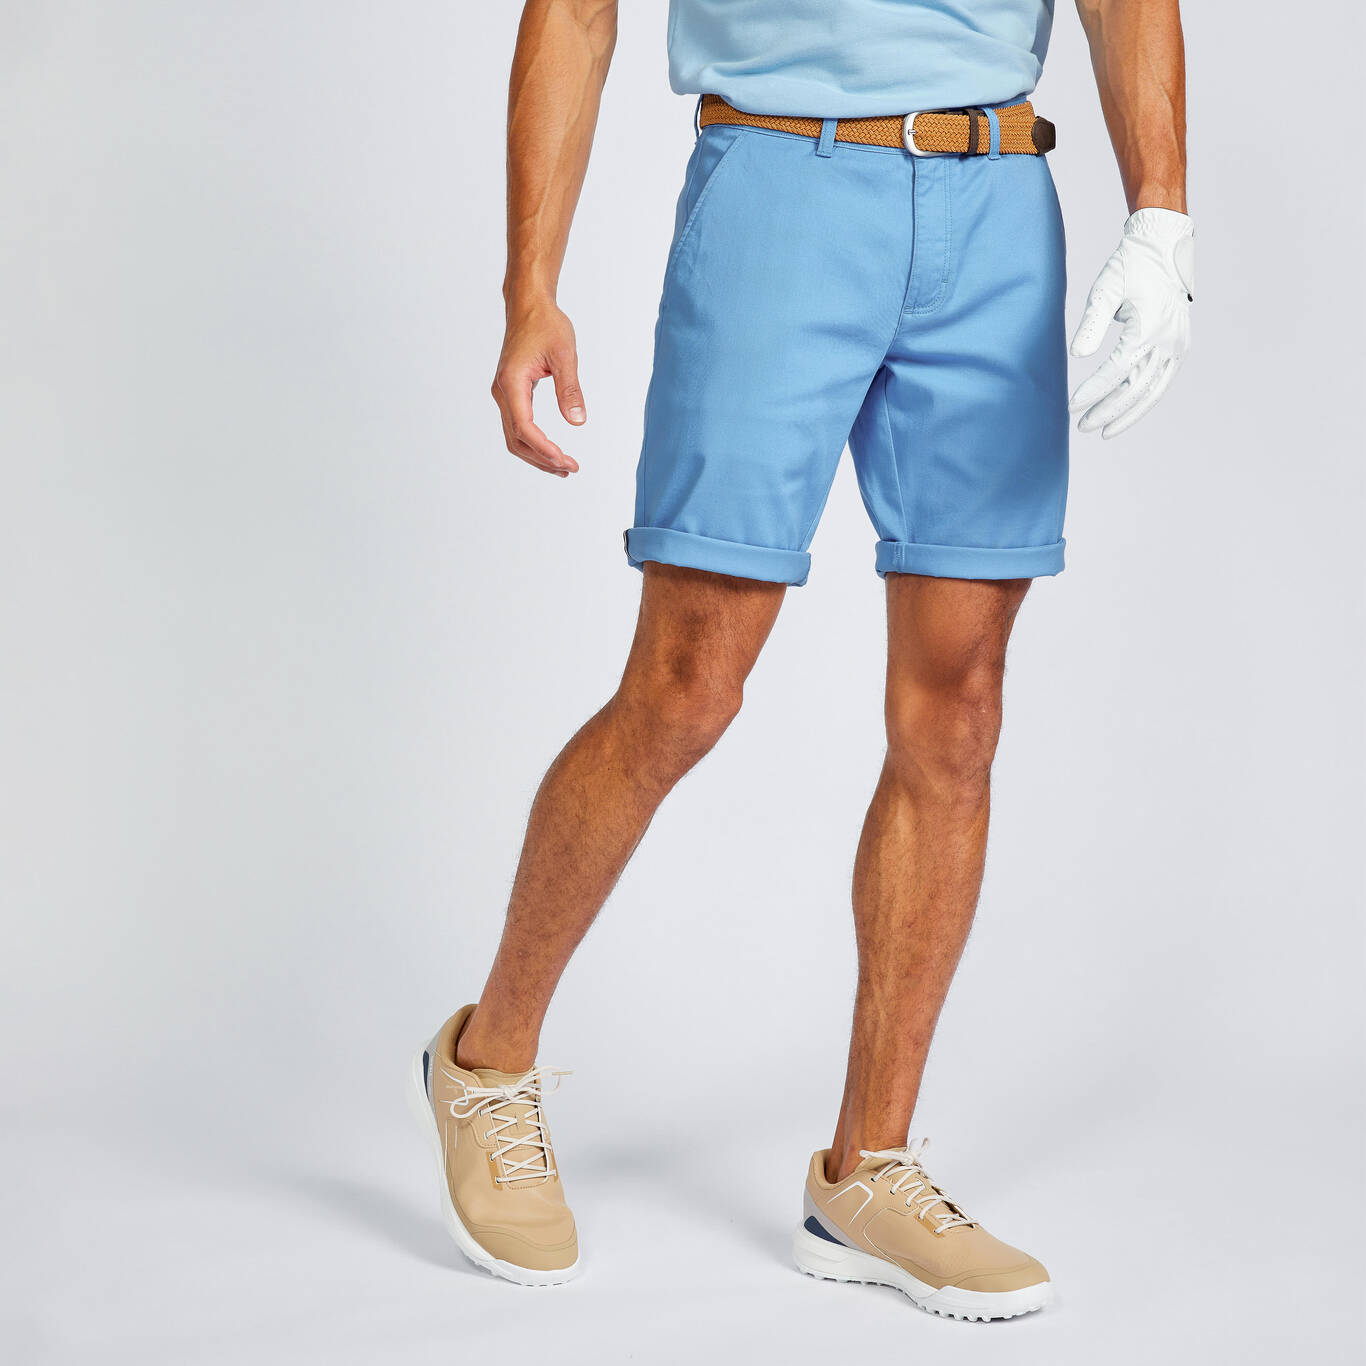 Men's golf chino shorts - MW500 Mediterranean blue